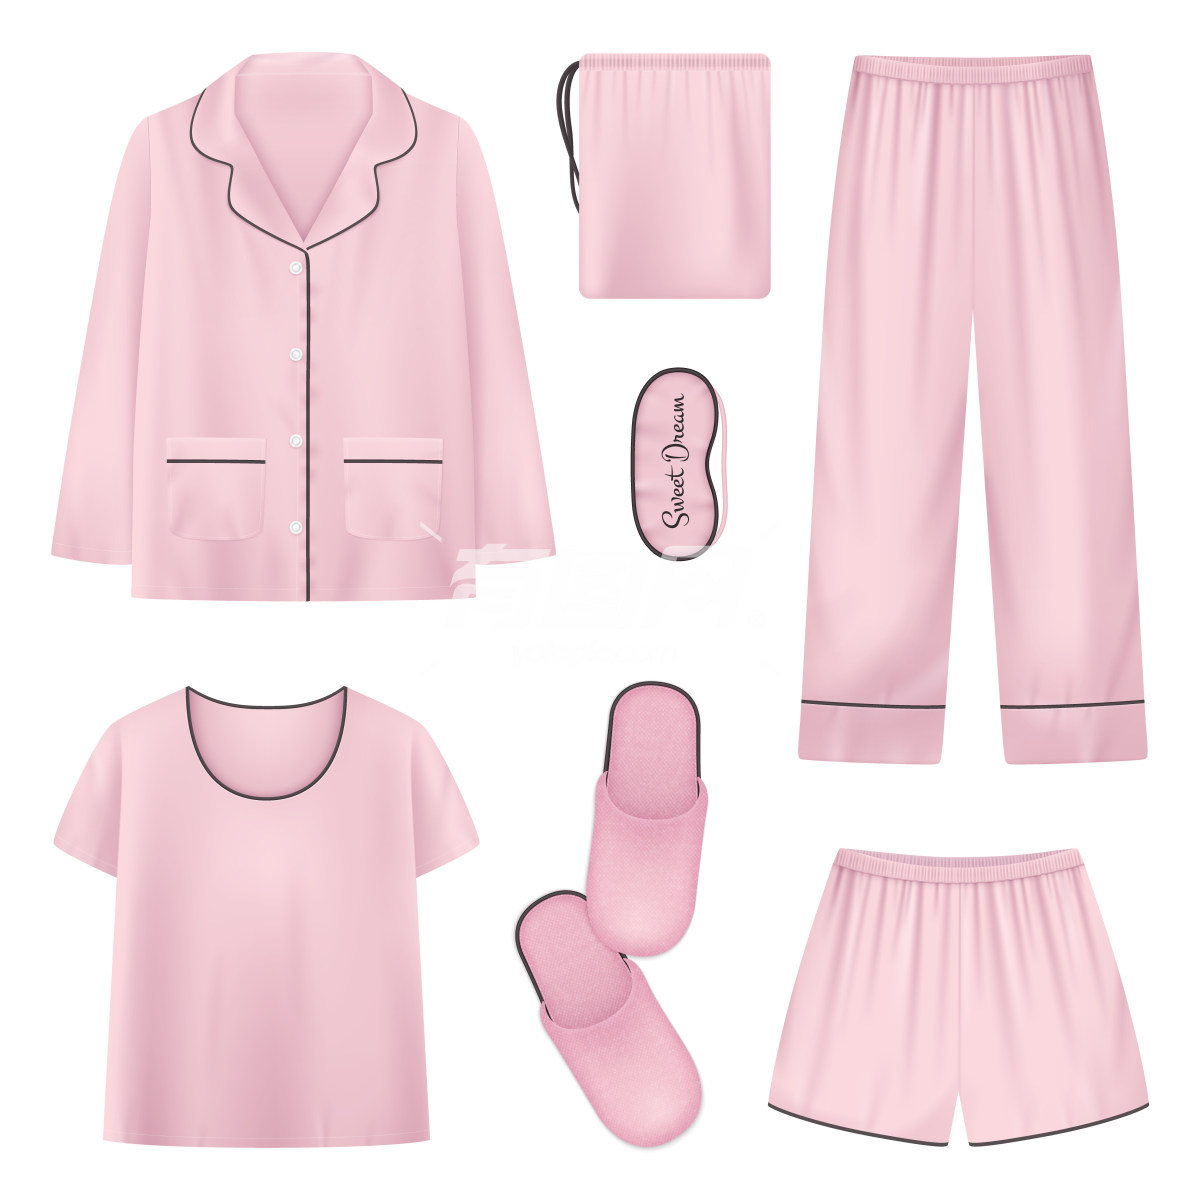 粉色睡衣配套用品